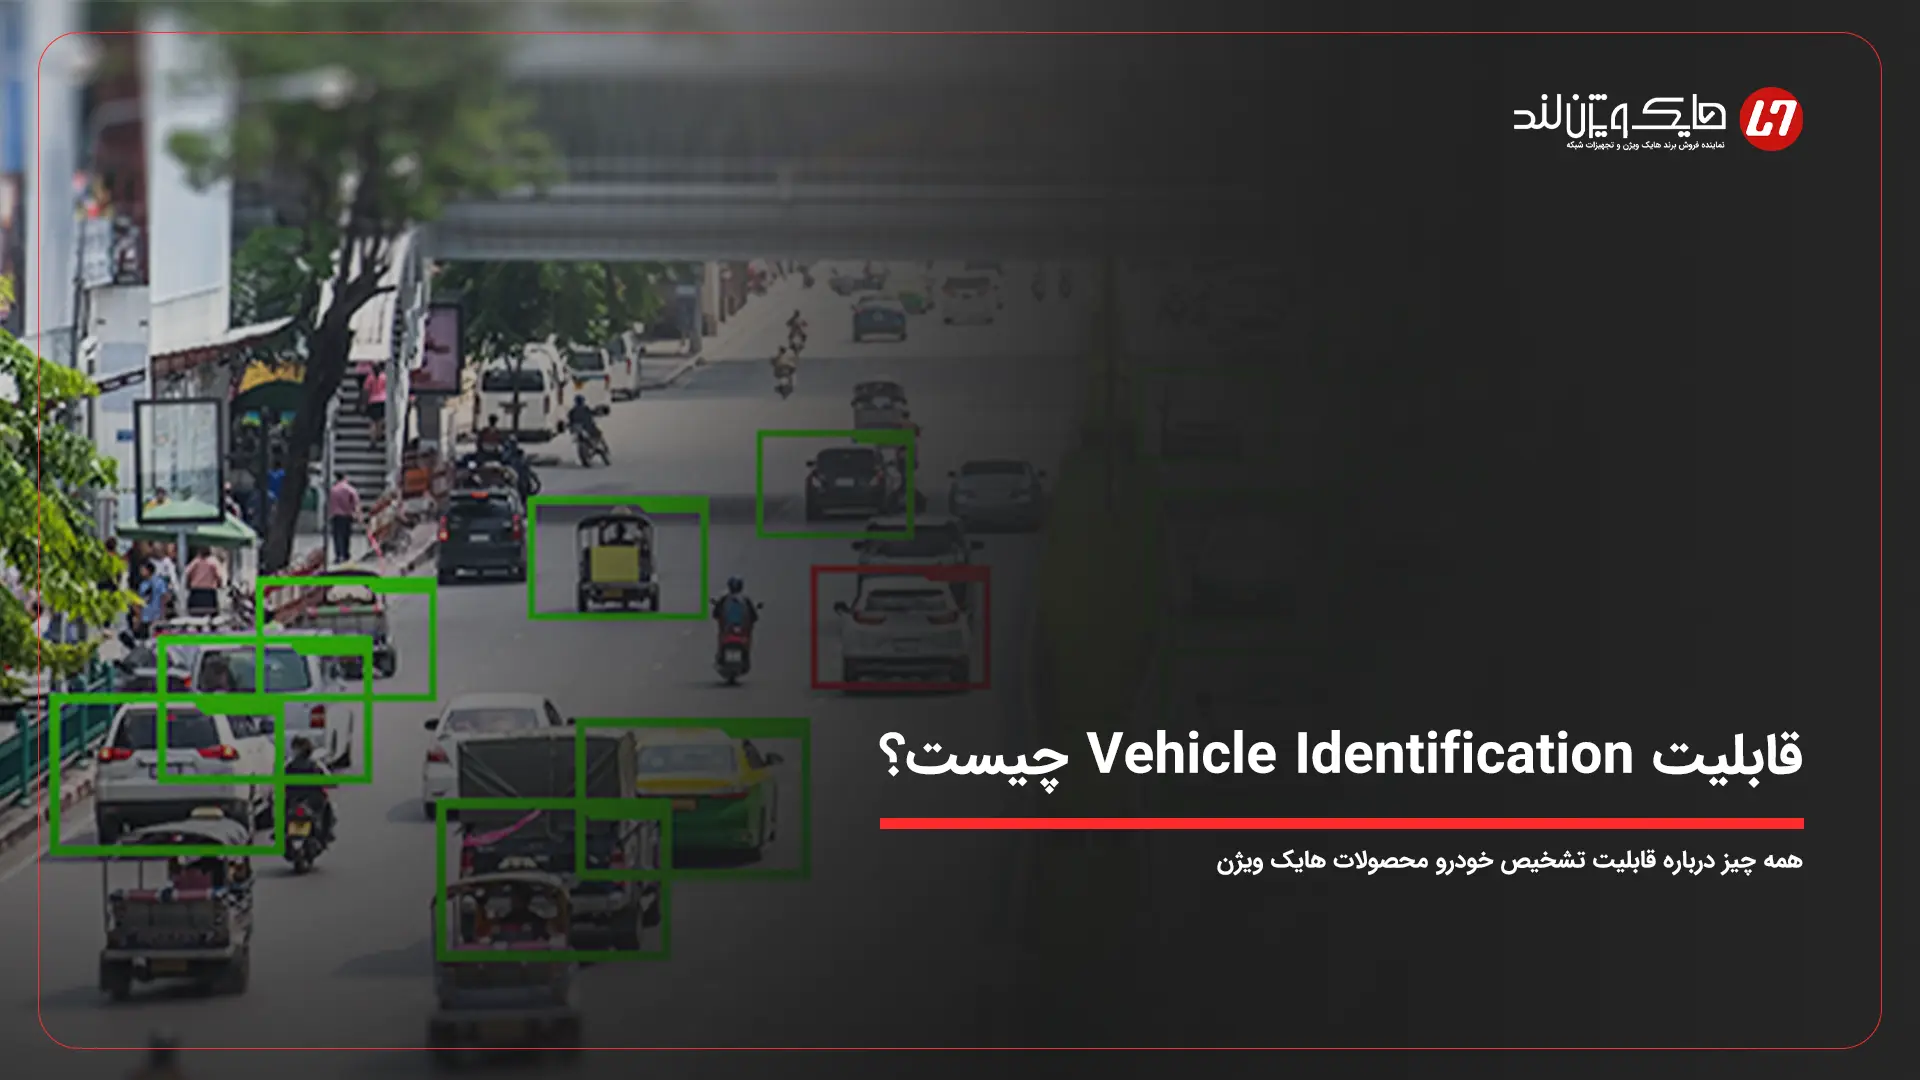 قابلیت تشخیص خودرو یا Vehicle Identification هایک ویژن چیست؟